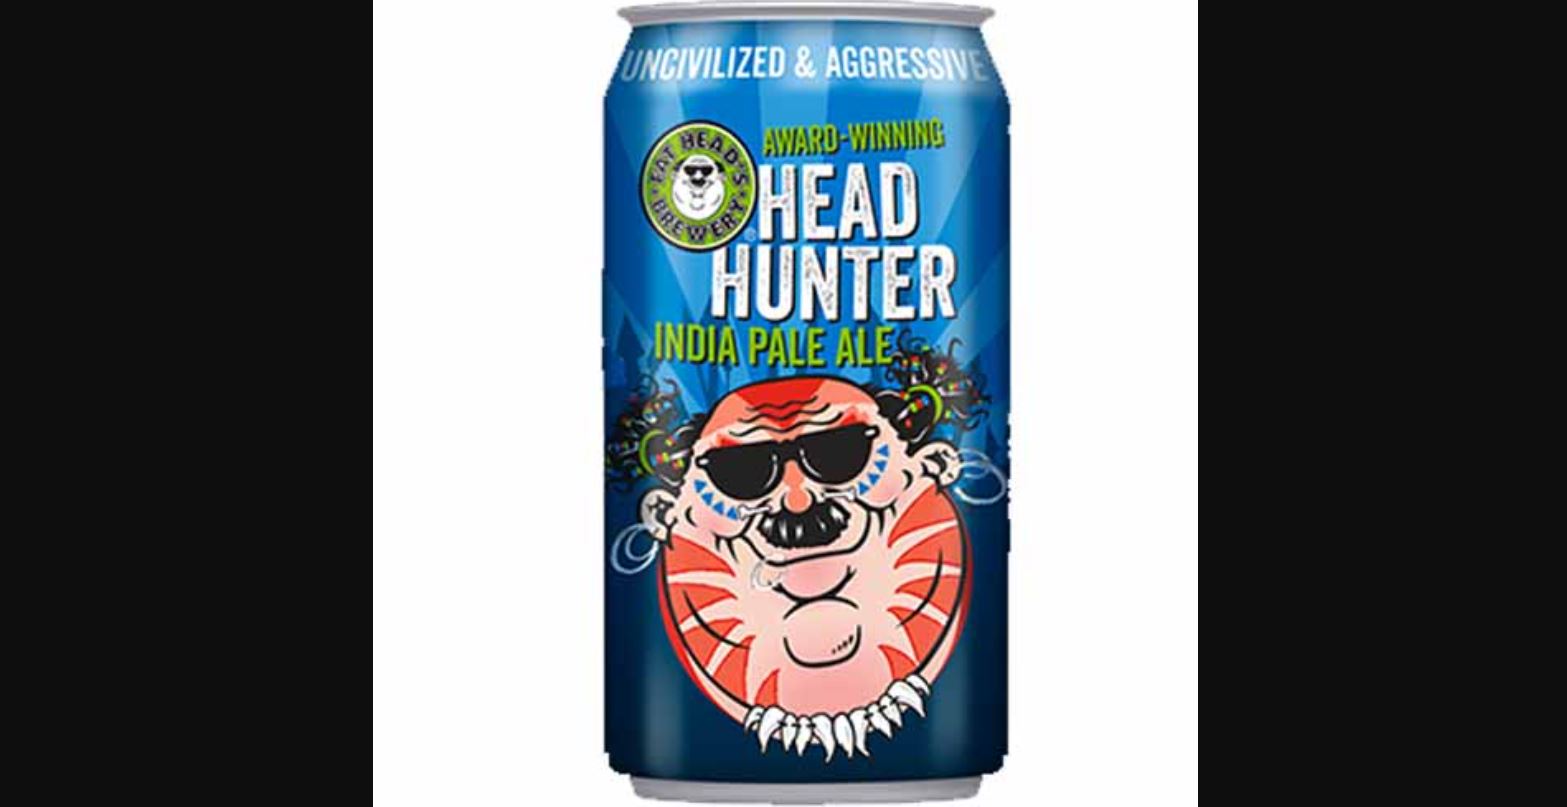 Fat Head’s Head Hunter